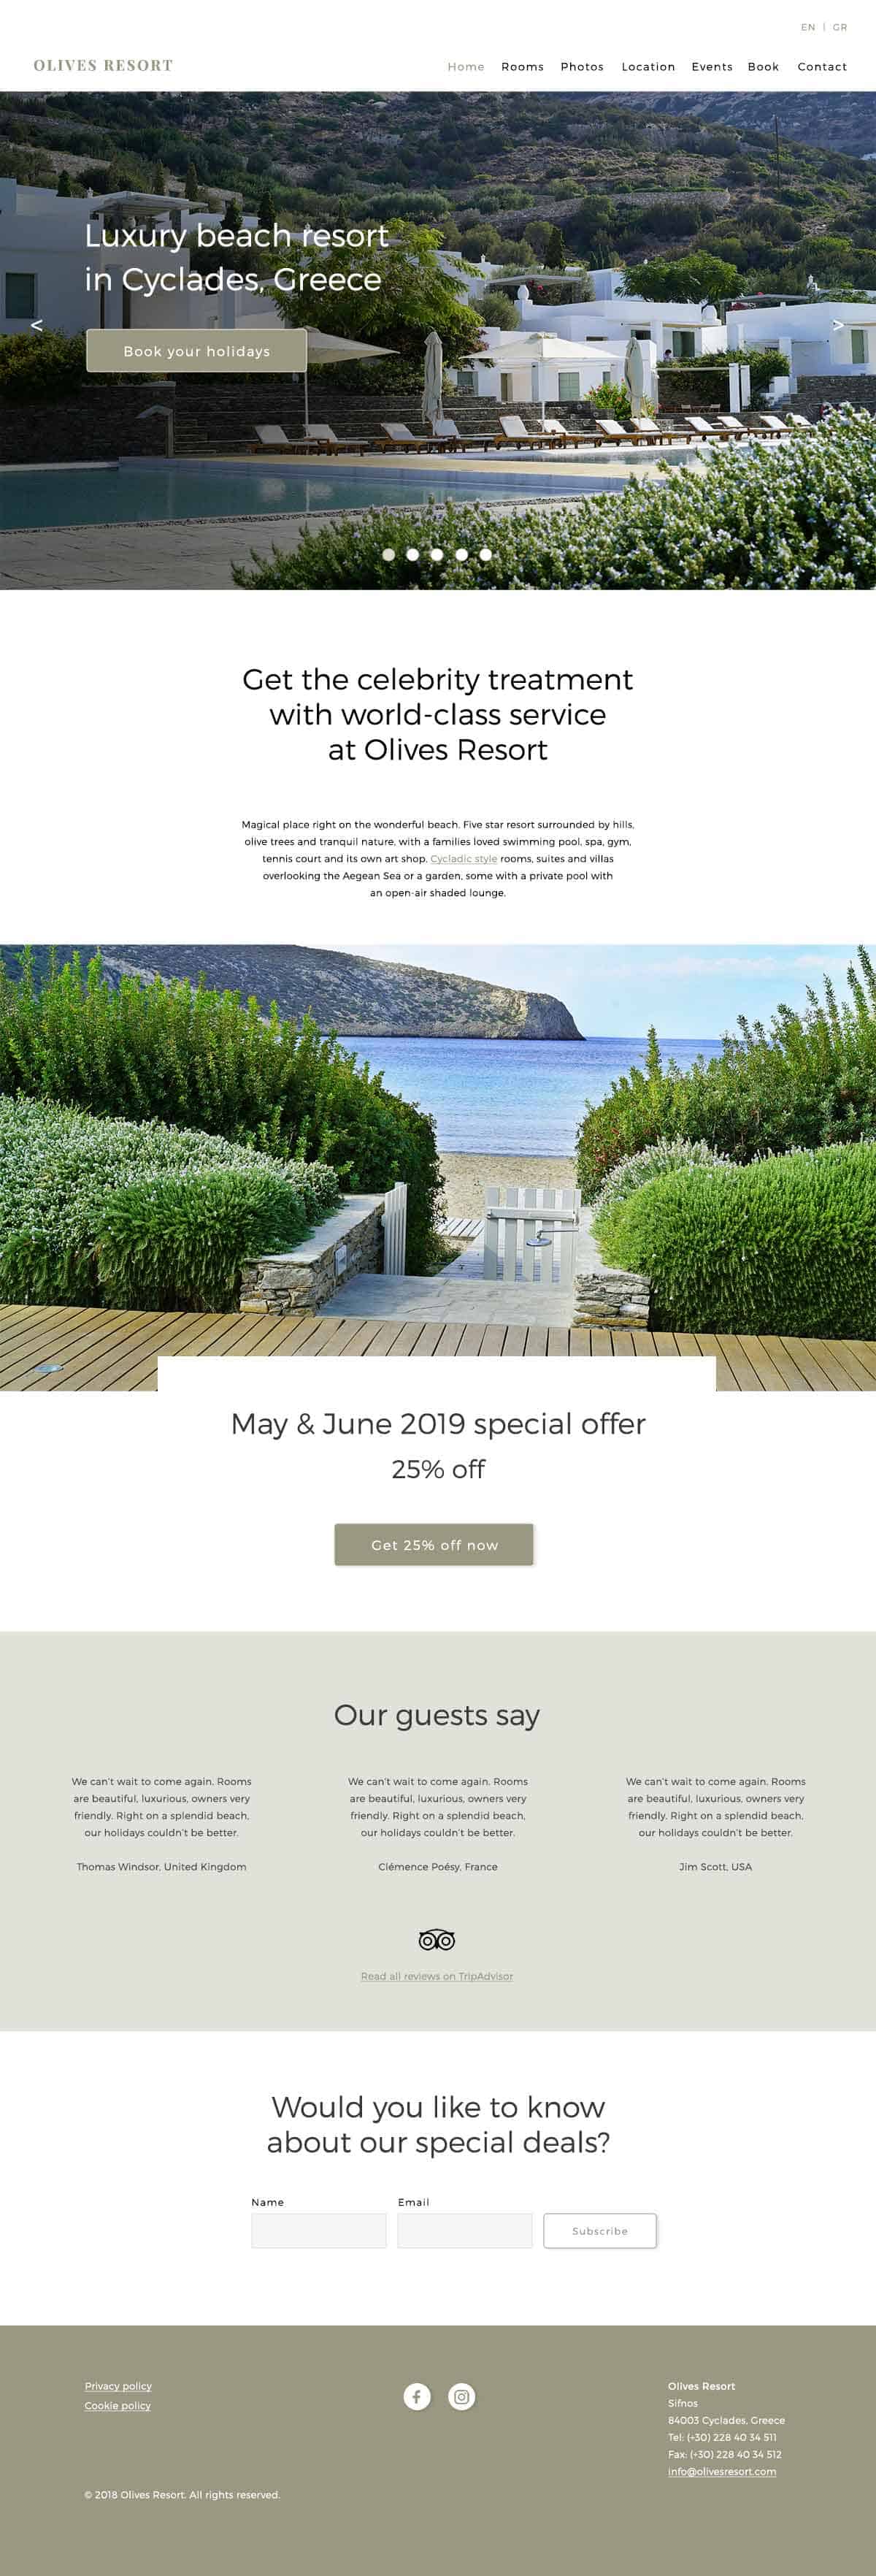 Hotel website design for Olives Resort in Greece